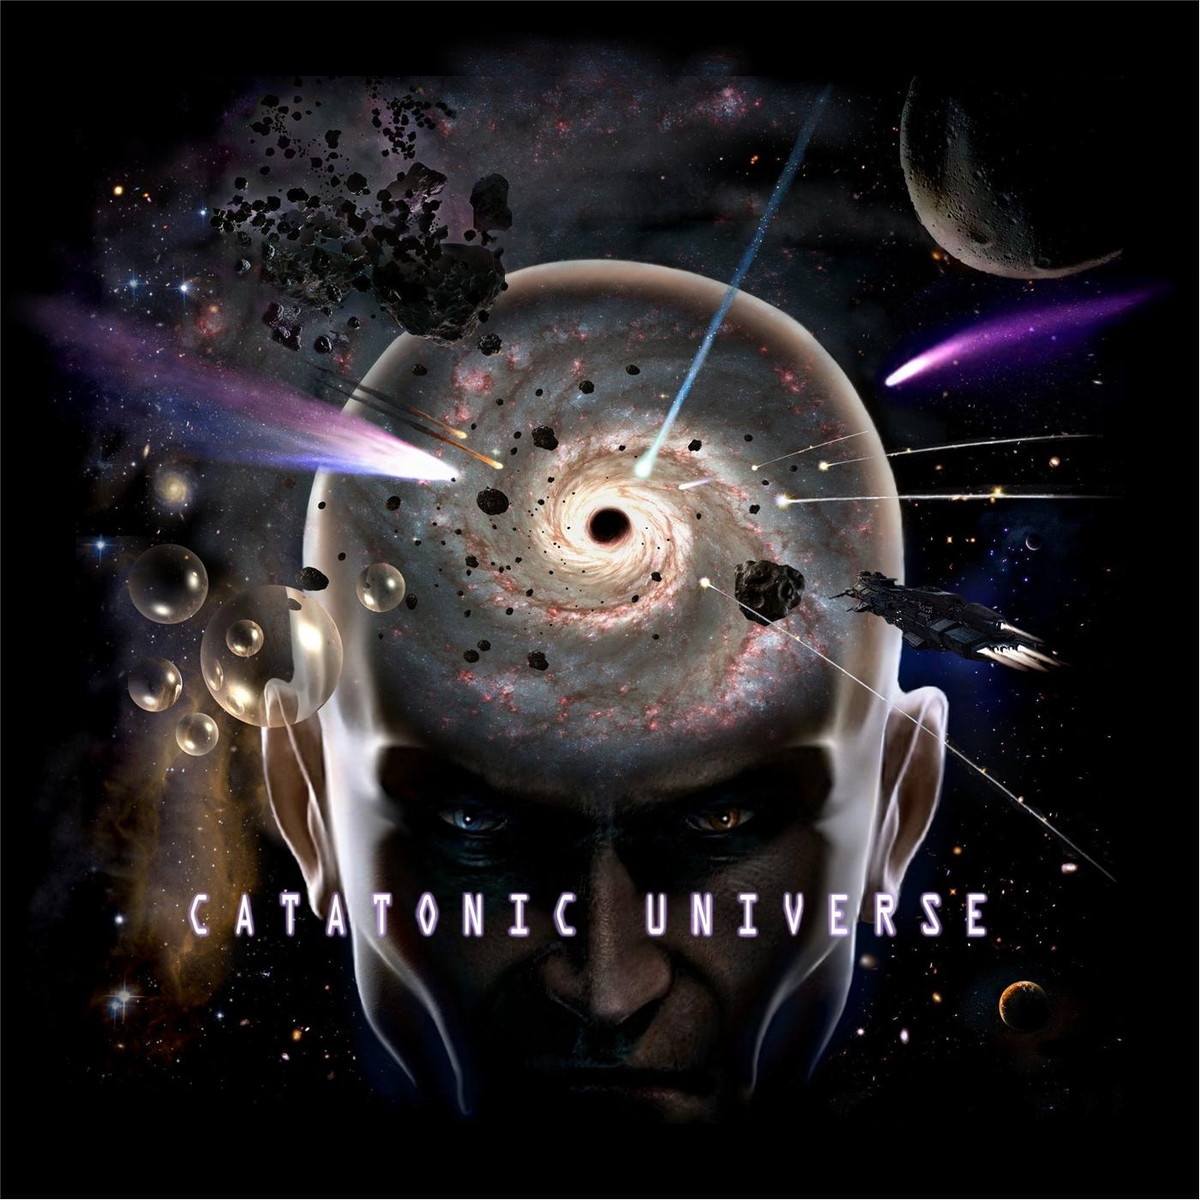 Catatonic Universe